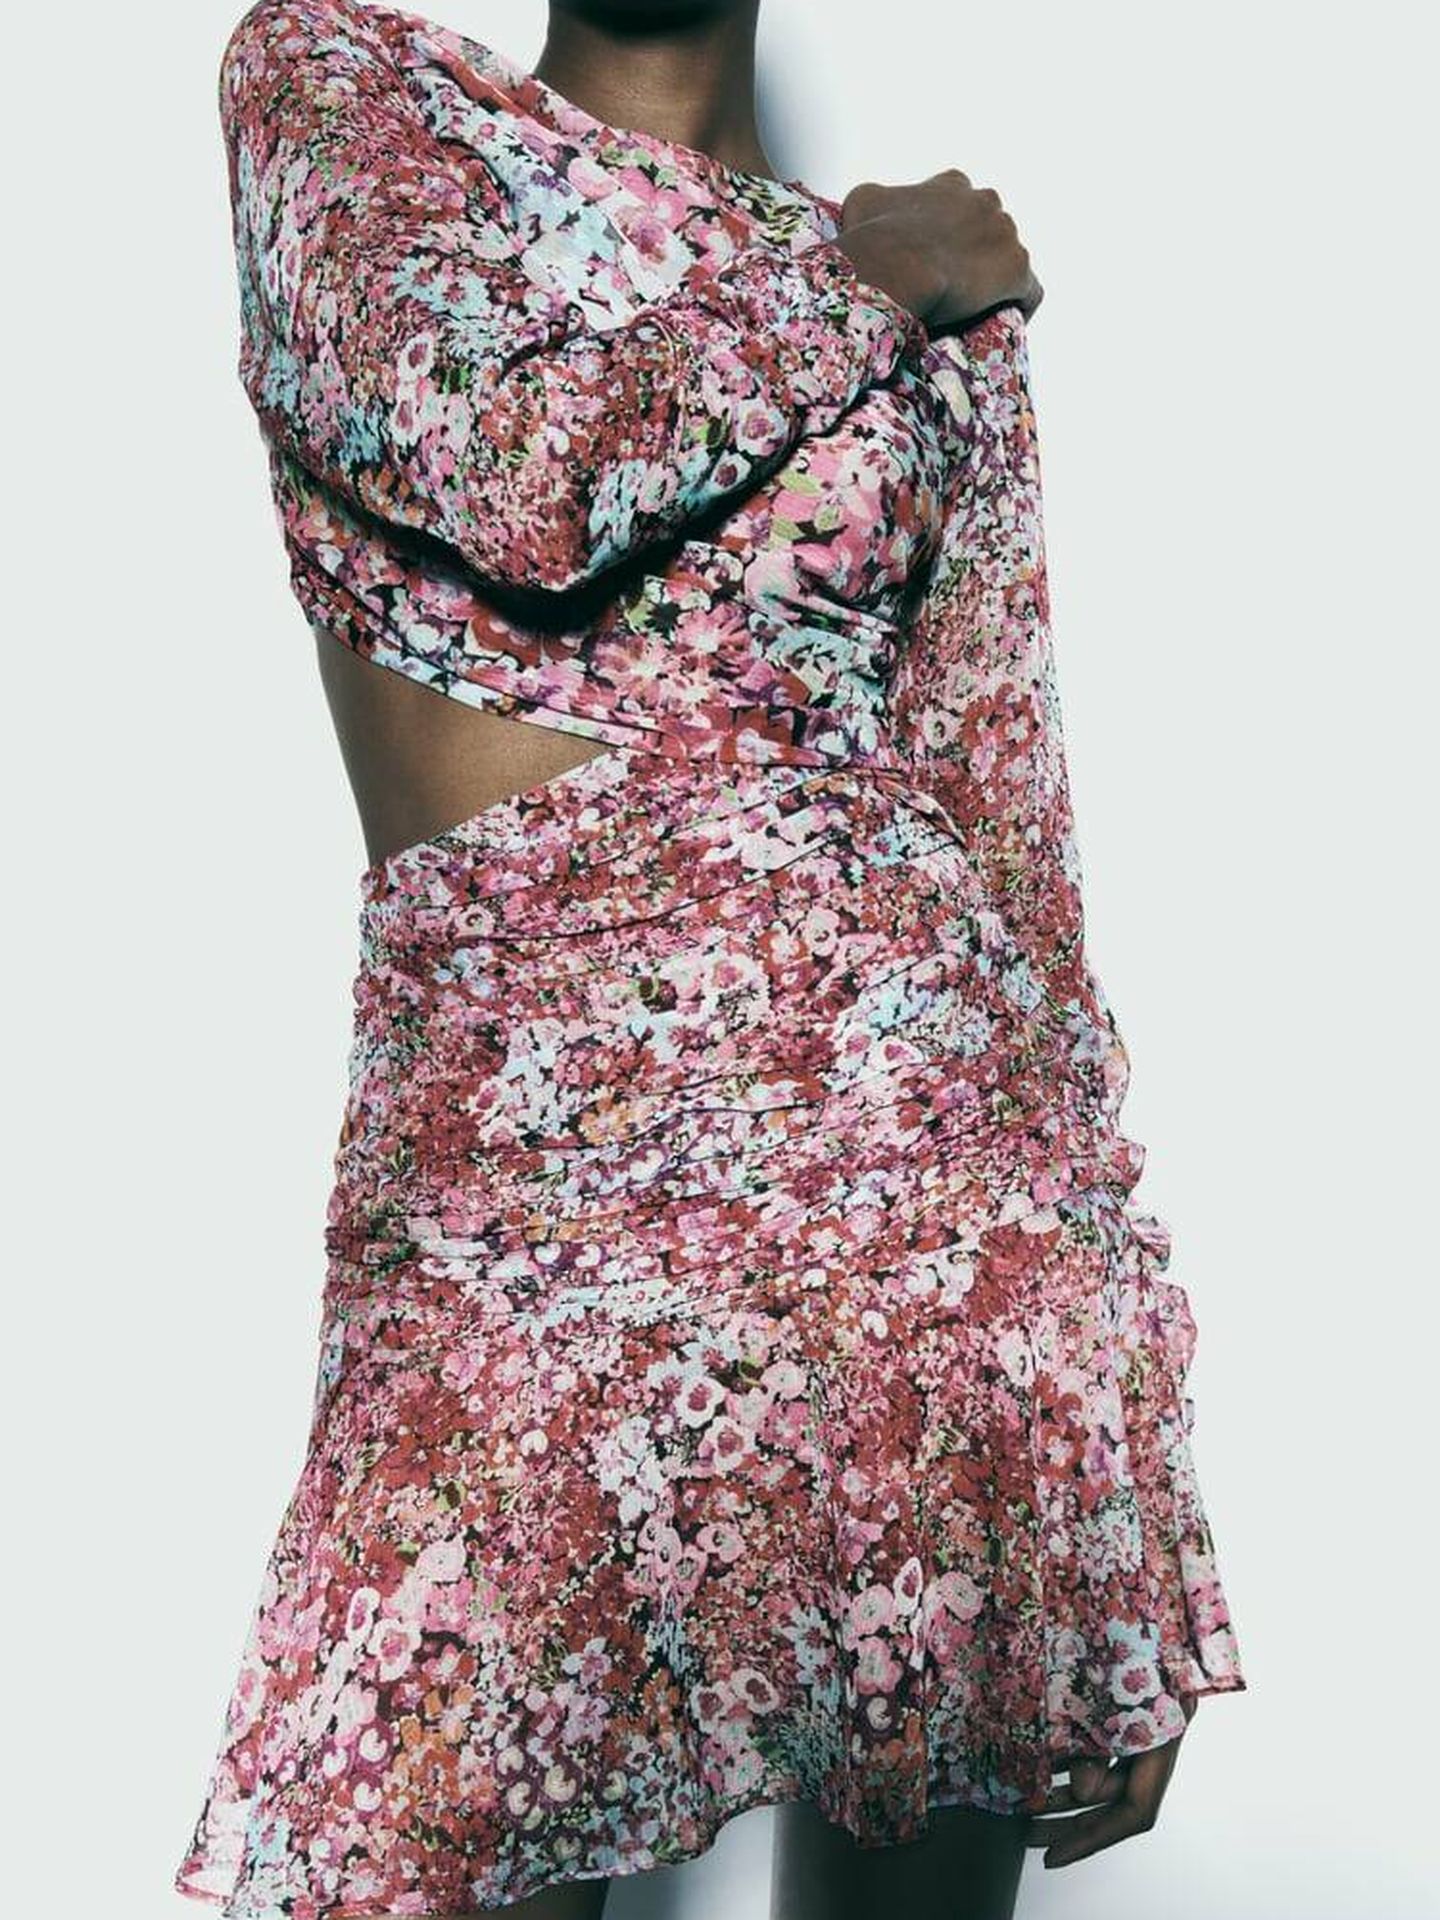 Vestido mini floral de Zara elegido por Rocío Osorno para su última publicación. (Zara)